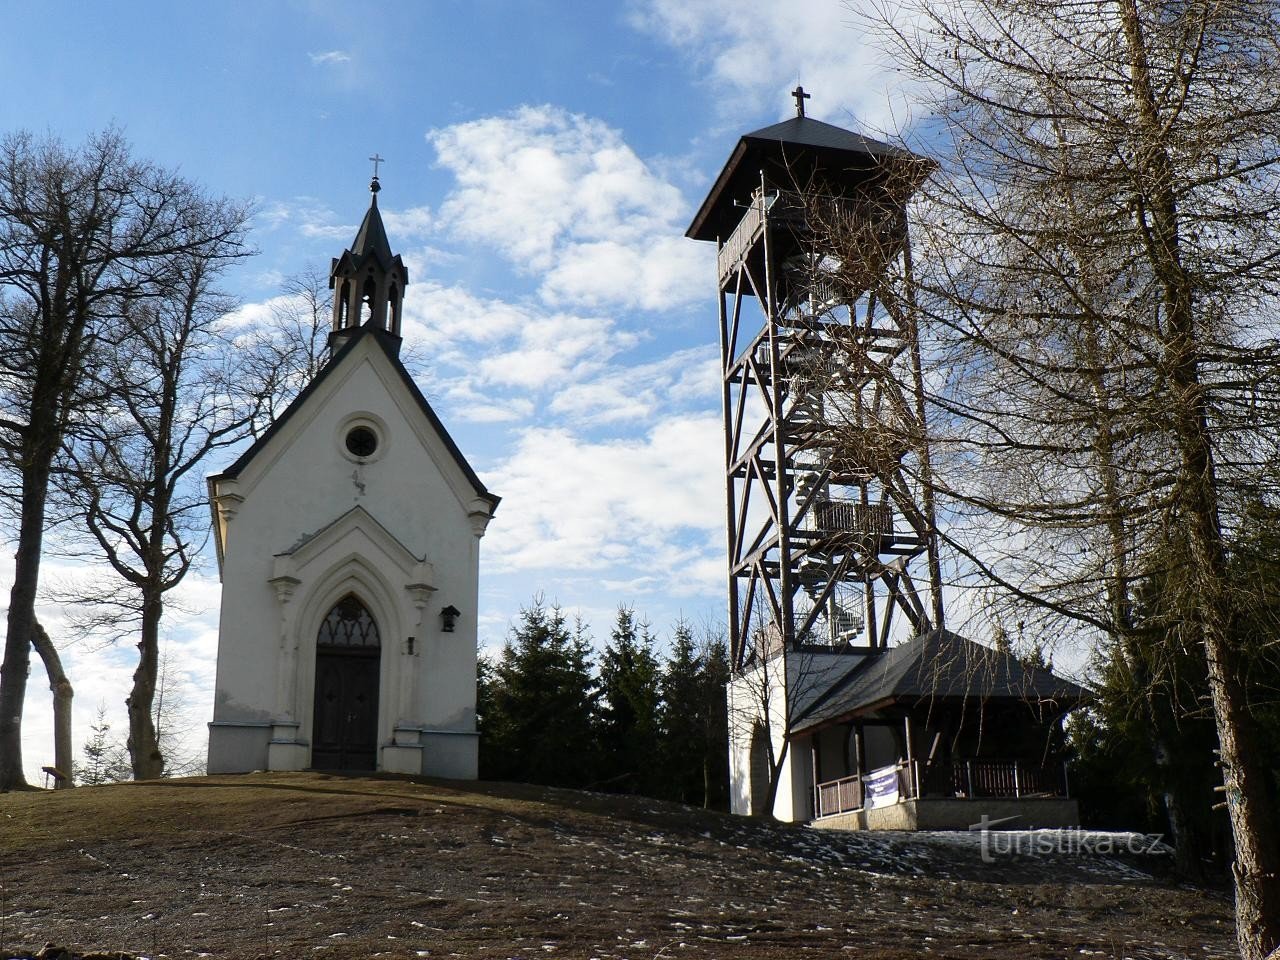 St. Tržnica, kapela in razgledni stolp